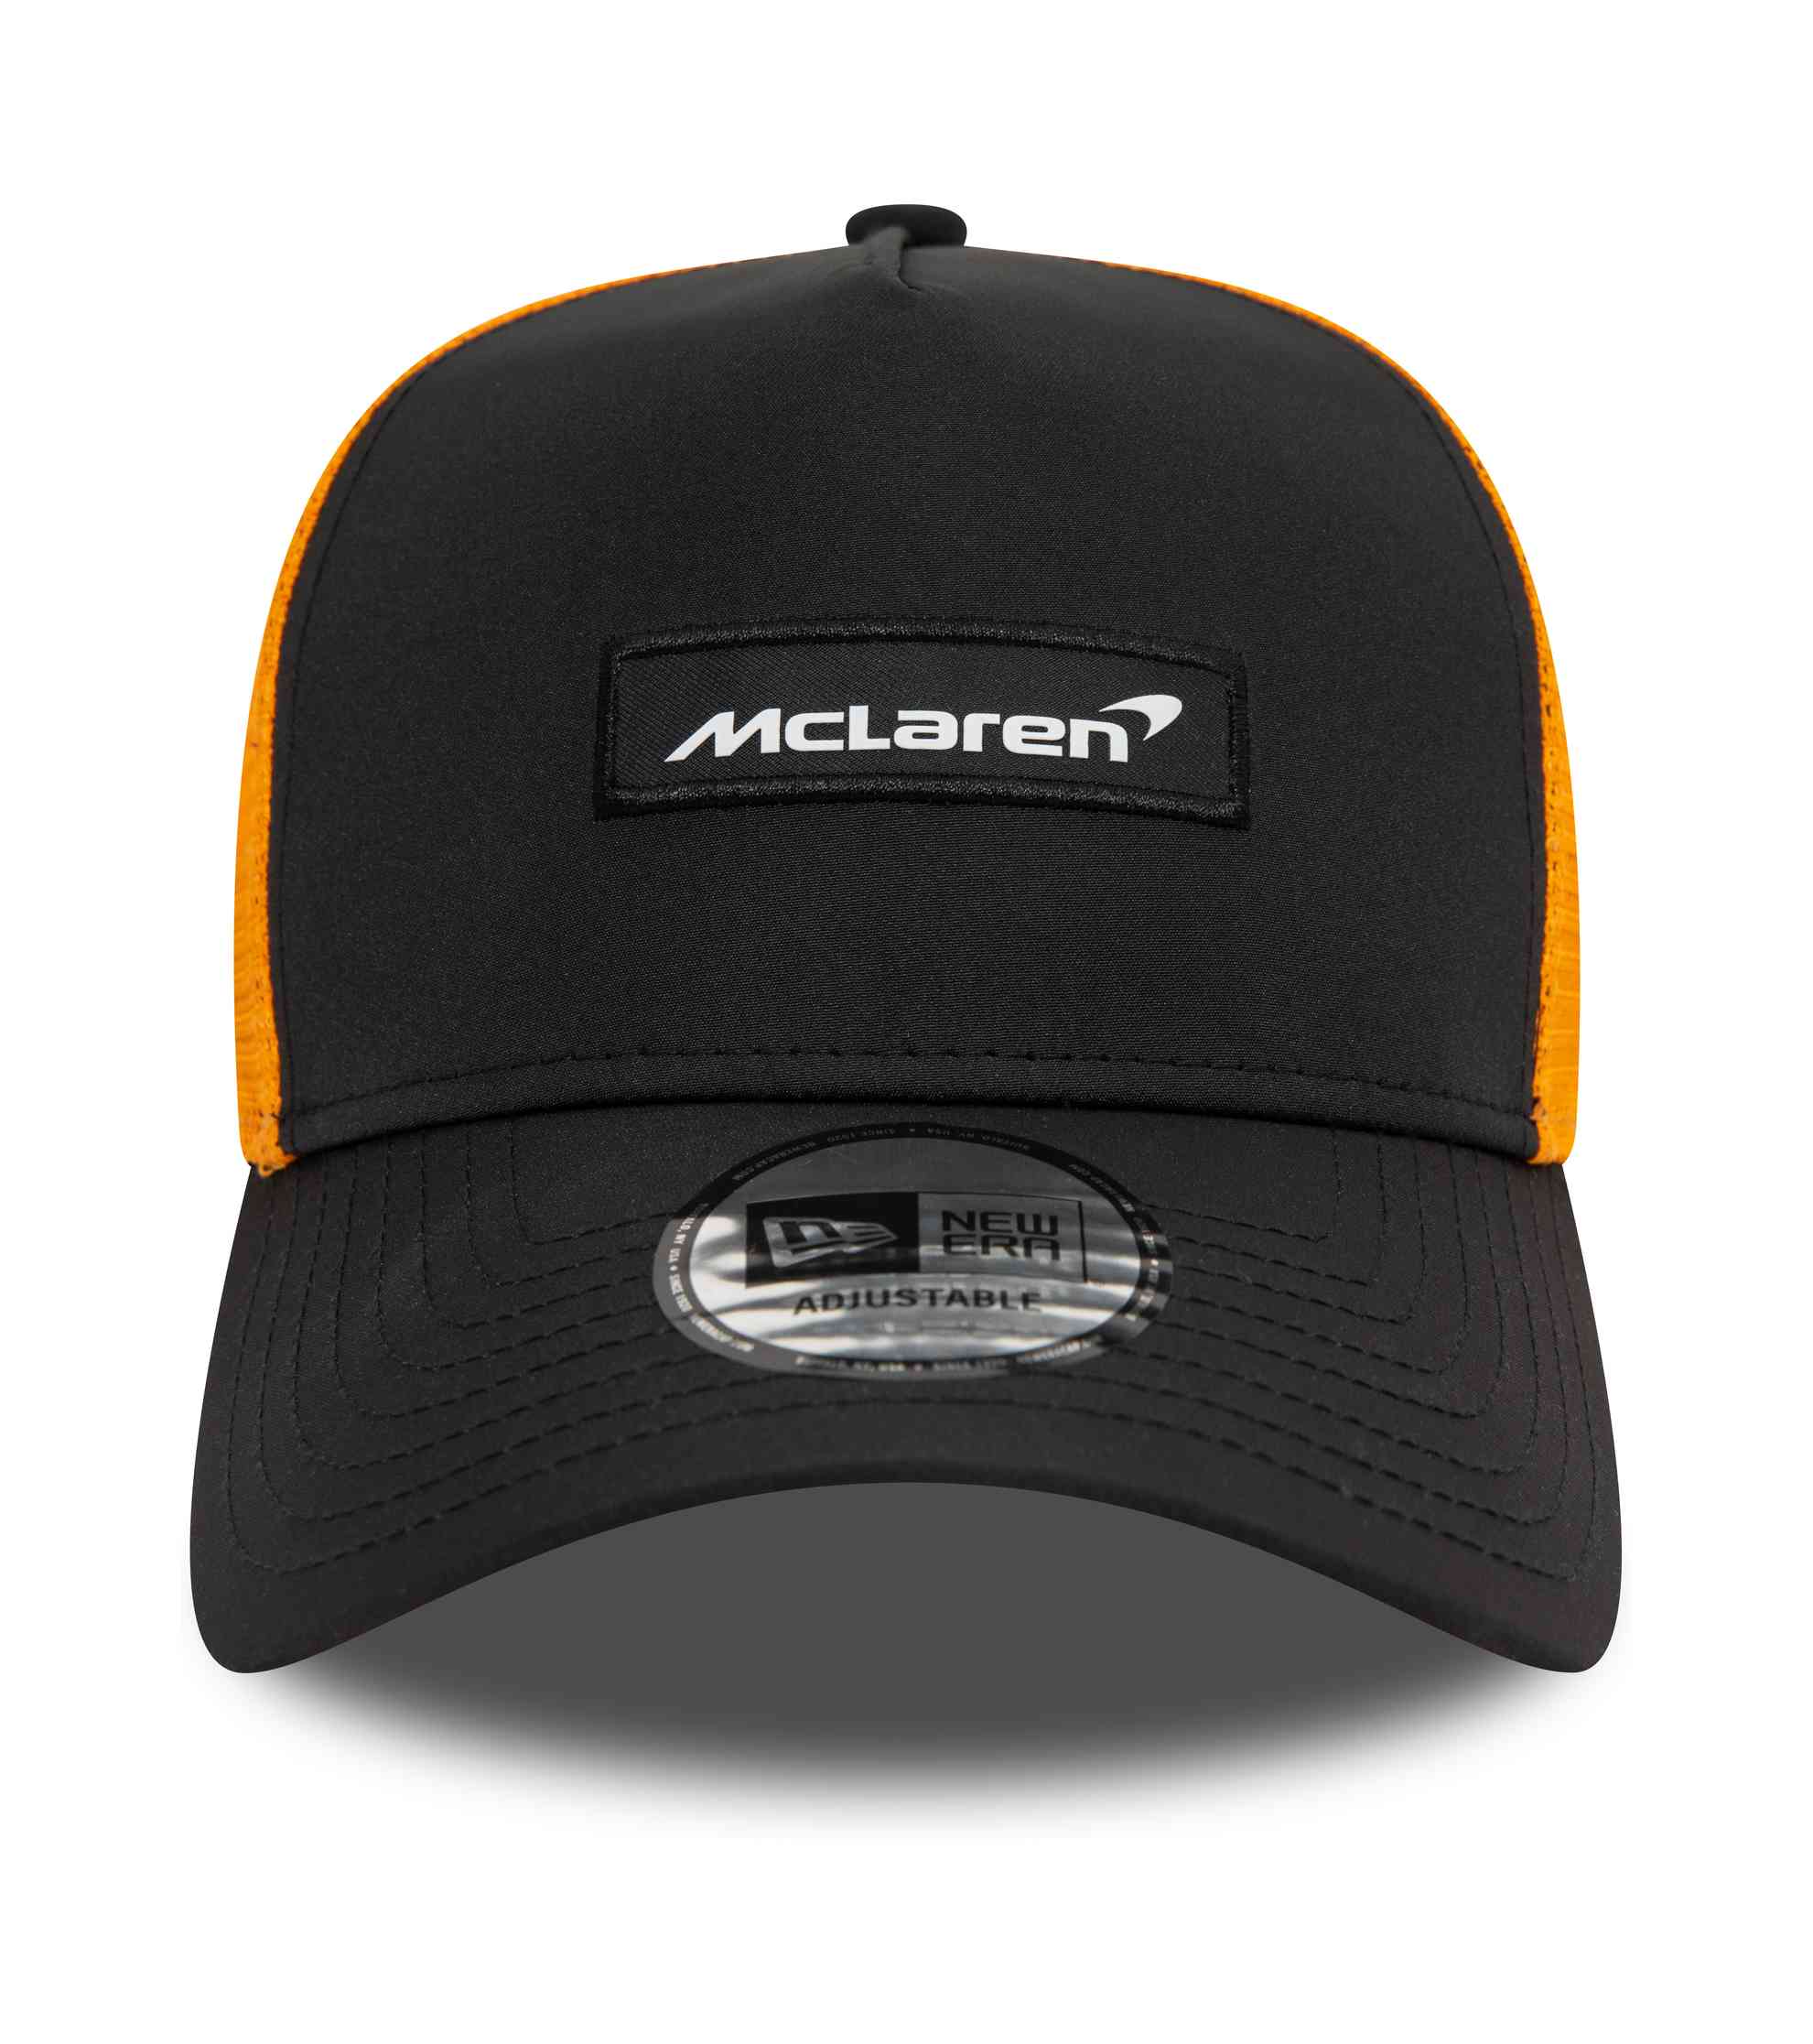 New Era - McLaren Patch Front Trucker Snapback Cap